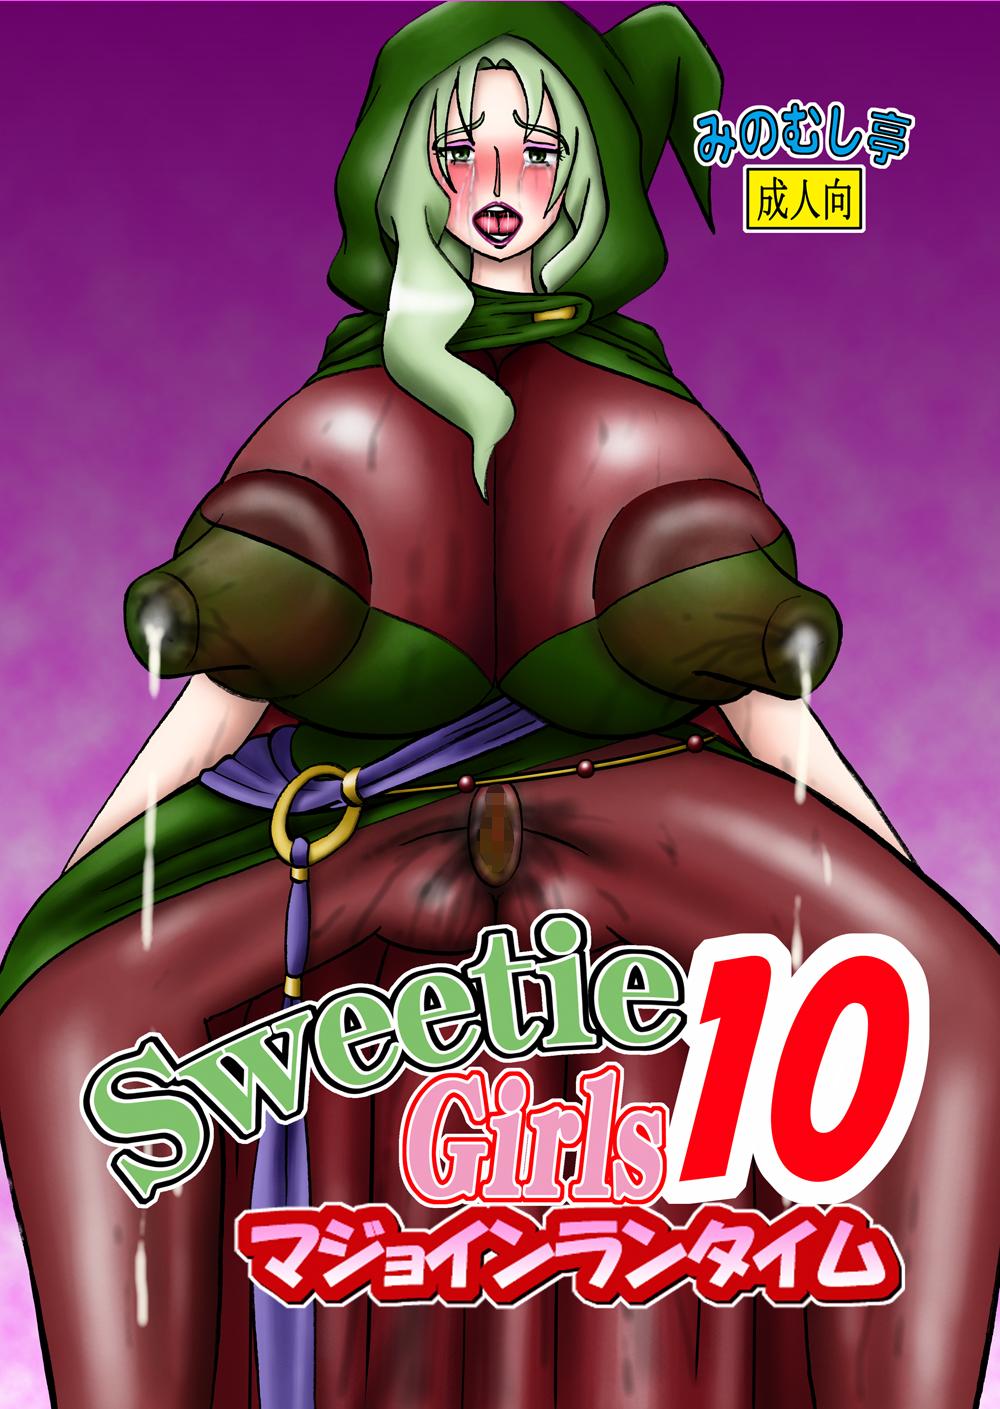 Sweetie Girls 10 1